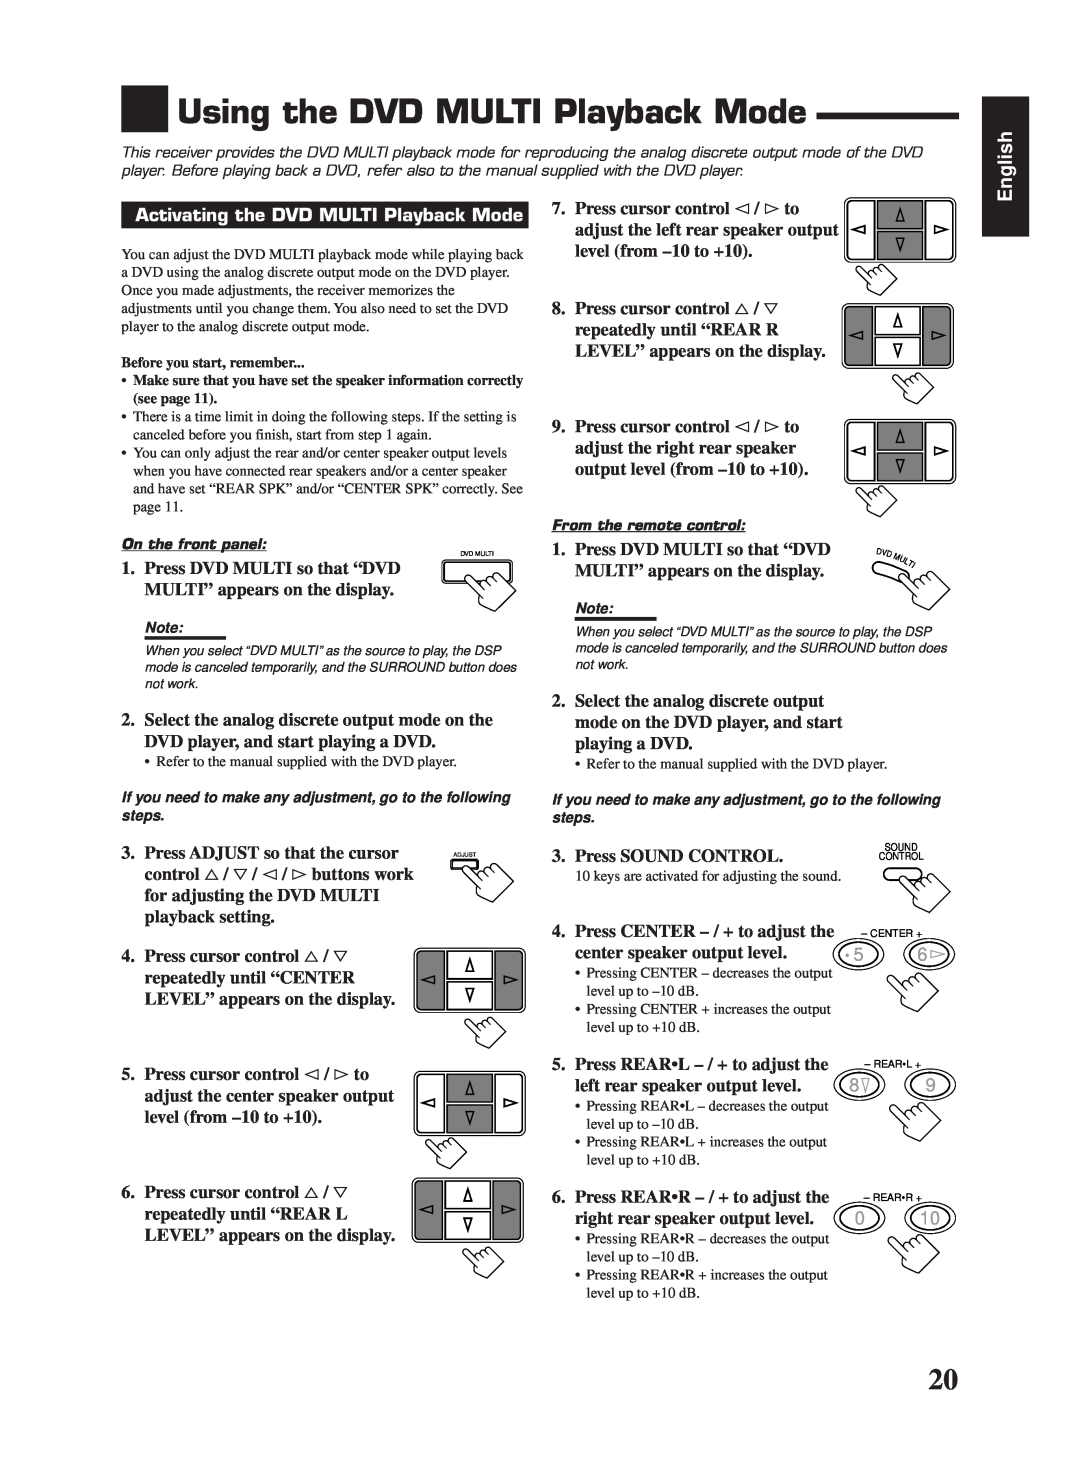 JVC LVT0142-006A, RX-669PGD manual Using the DVD MULTI Playback Mode, English, Activating the DVD MULTI Playback Mode 